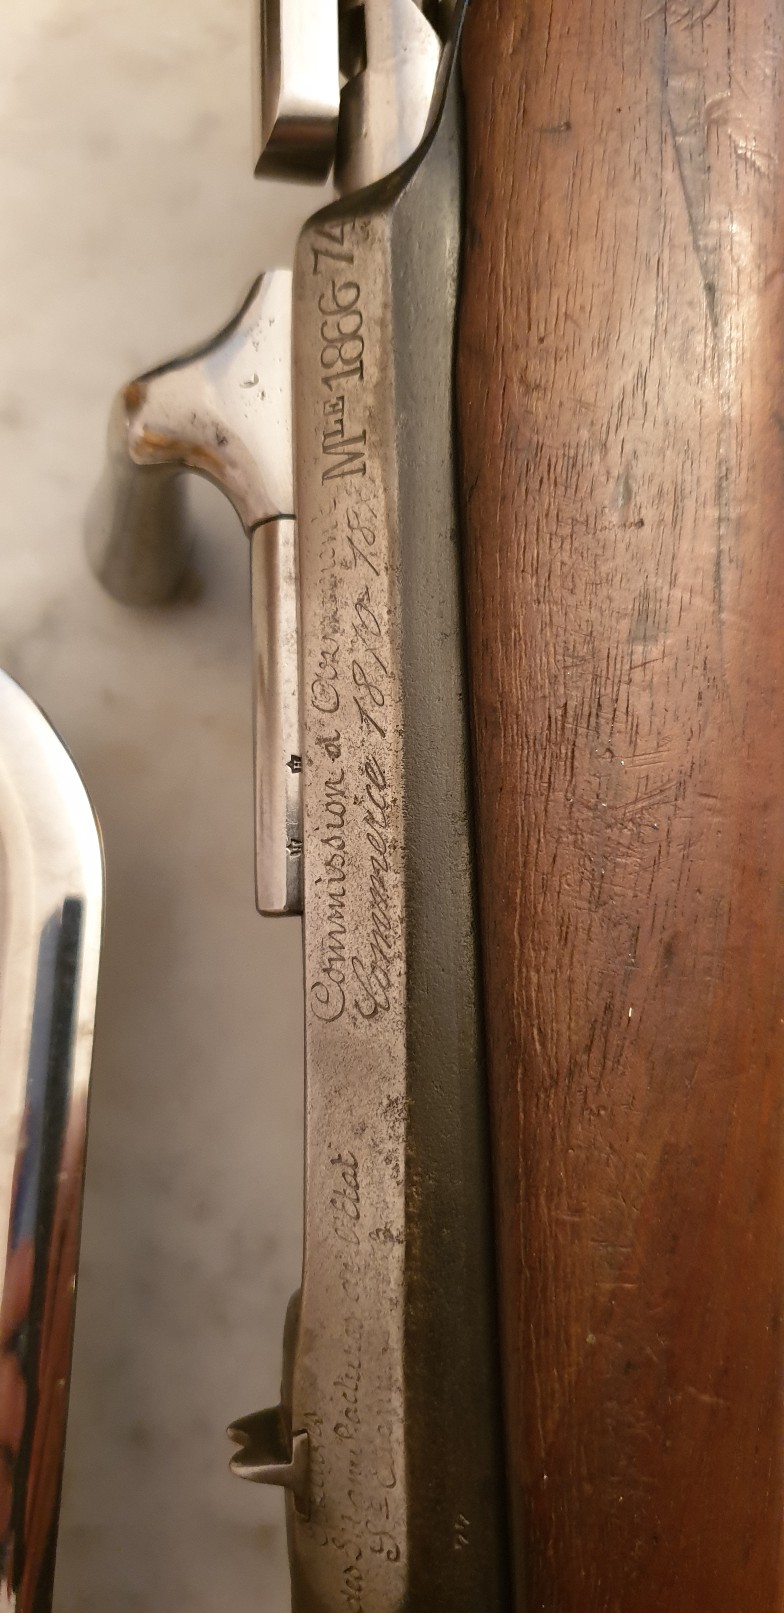 Besoin d'aide pour identifier une carabine Gras modèle 1866-1874  20191126